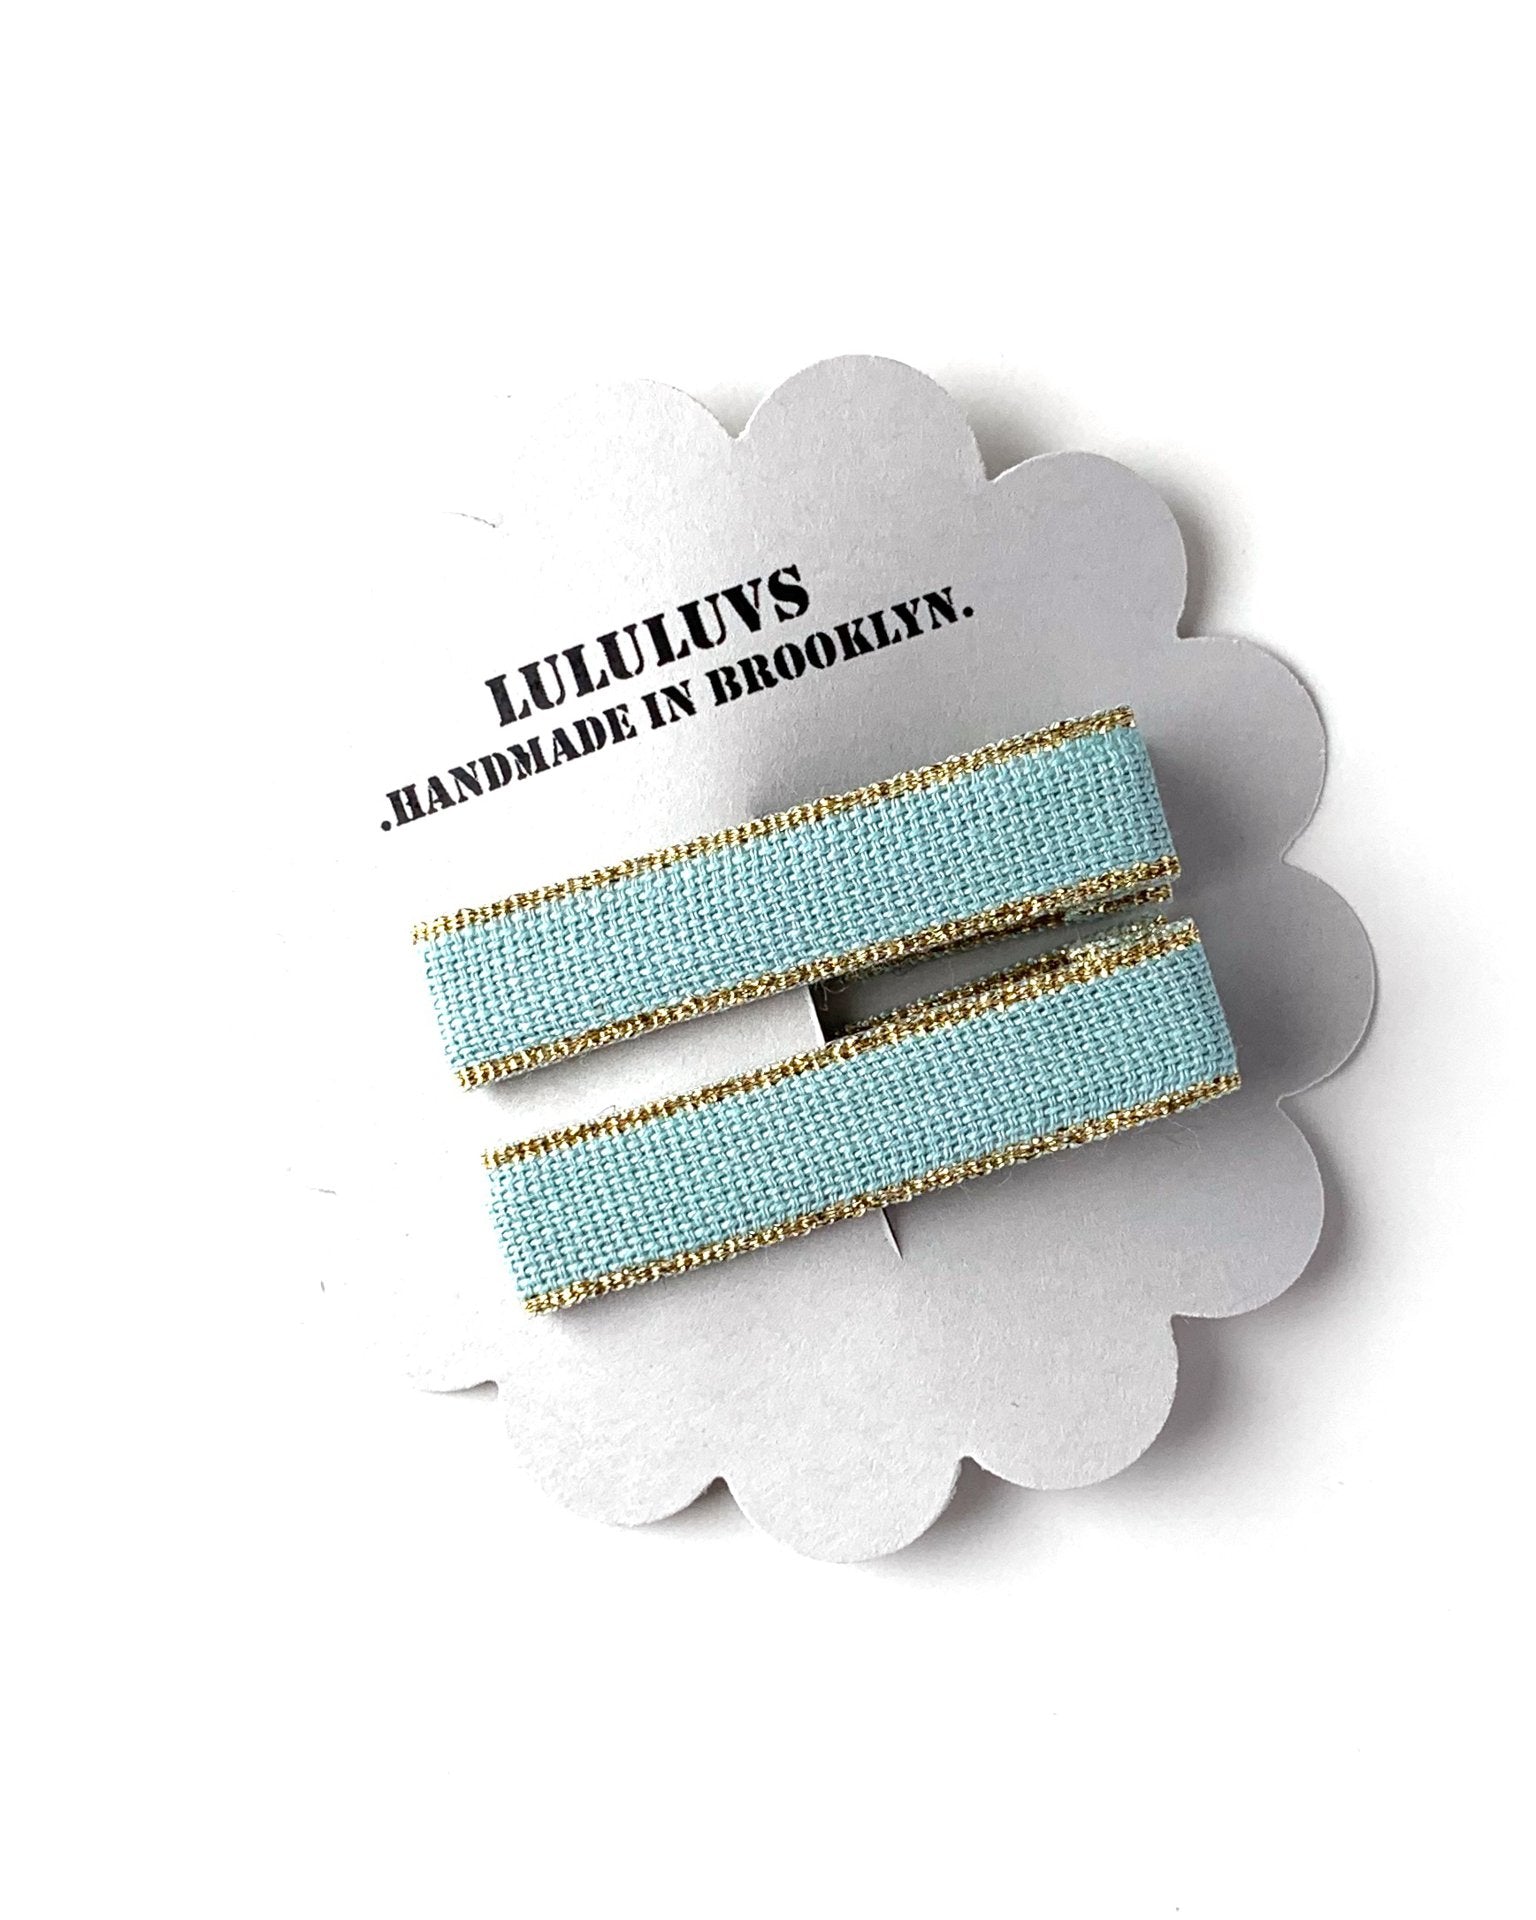 Little lululuvs accessories ribbon bar clips in sky